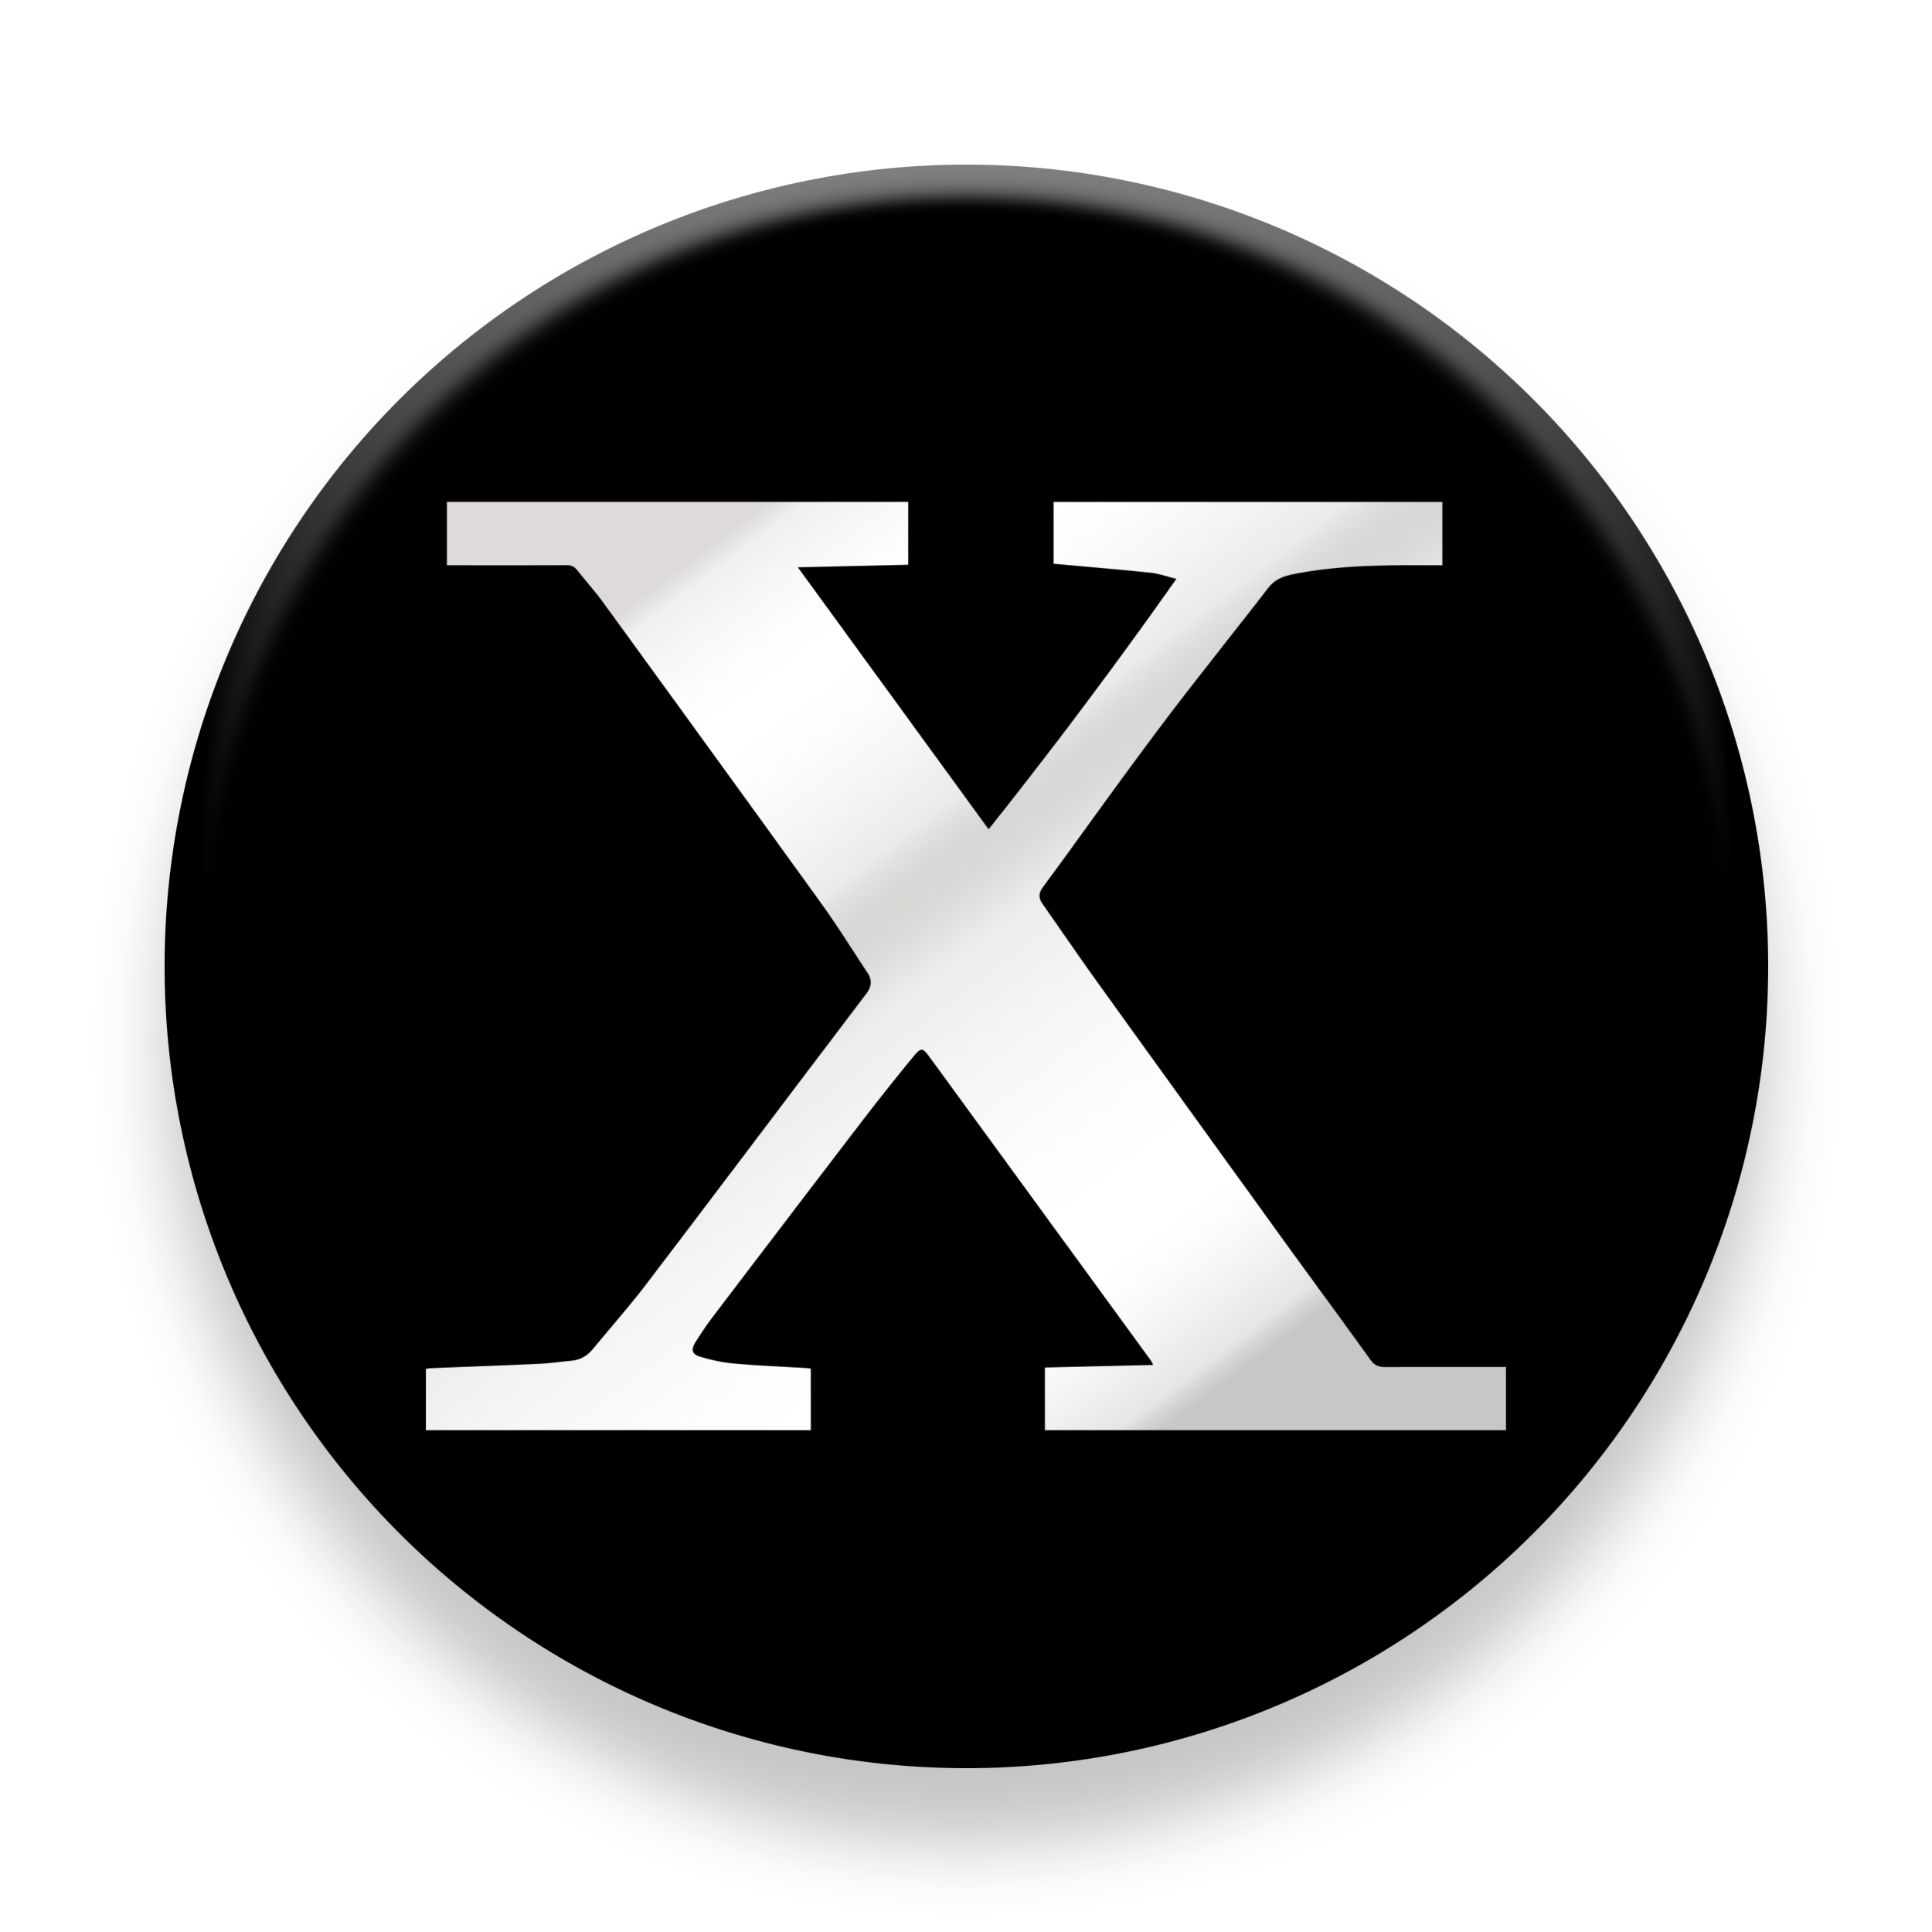 برچسب موبایل  مدل X symbol مناسب برای پایه نگهدارنده مغناطیسی